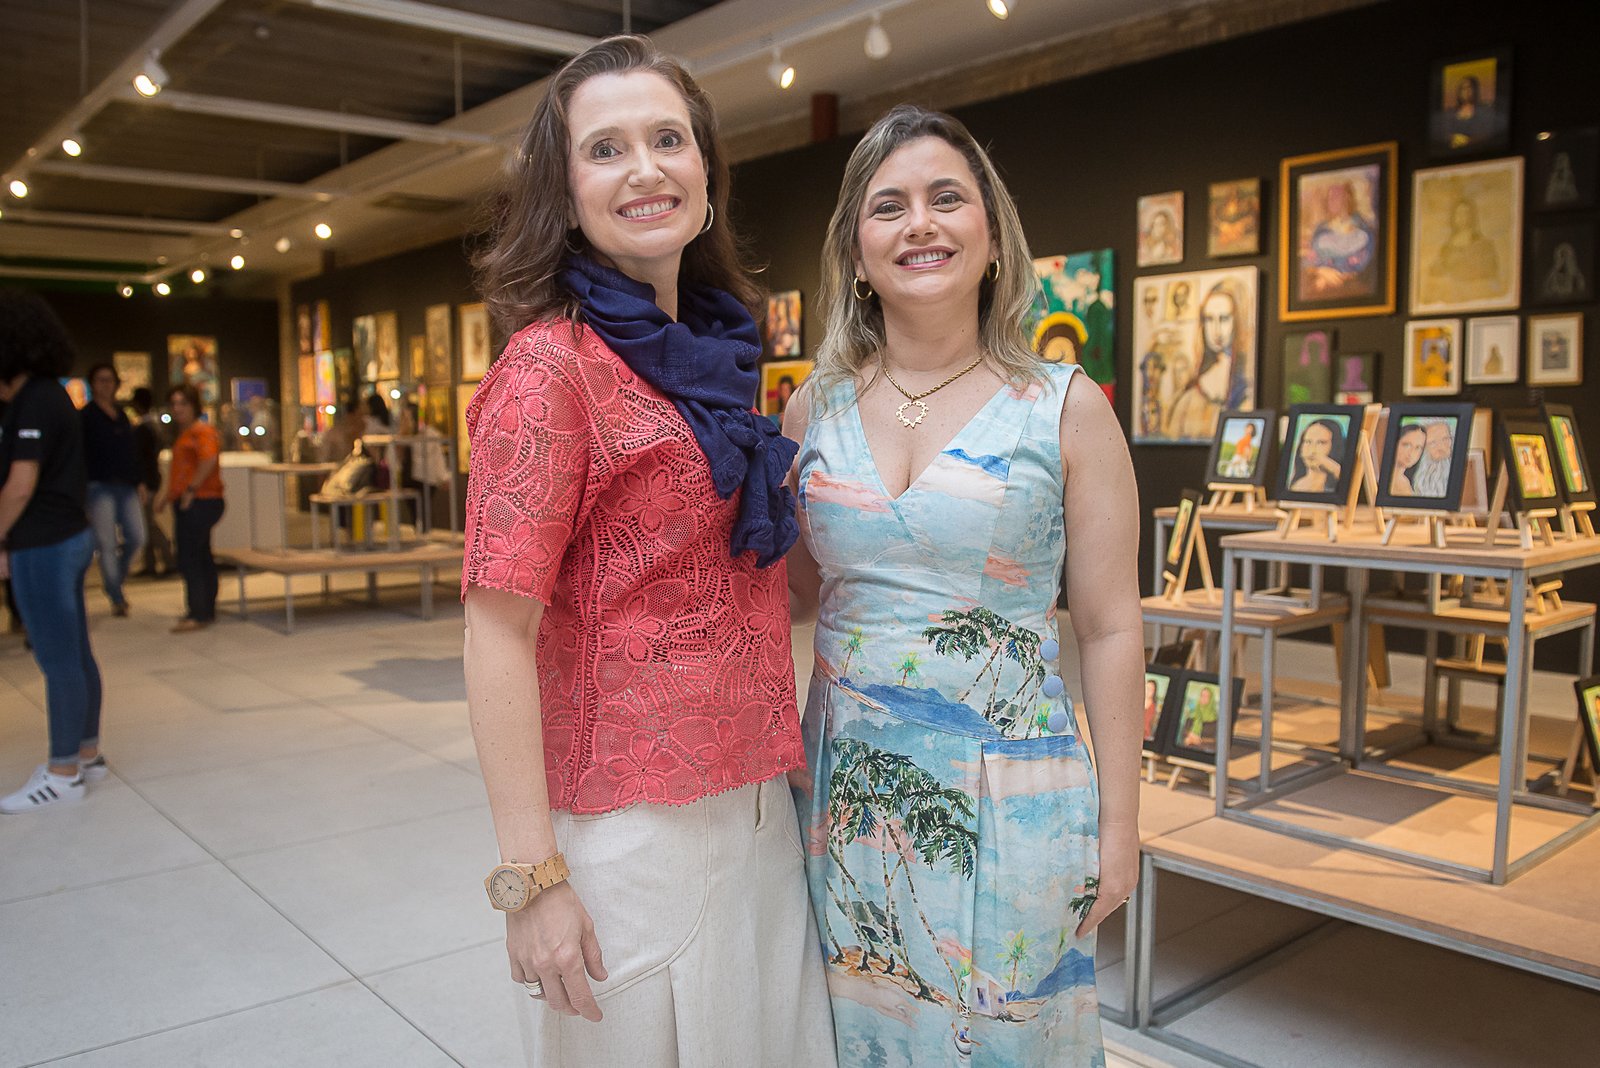 Cultura: Exposição “Novos Olhares para Monalisa” apresenta obras inéditas em Fortaleza de artistas cearenses